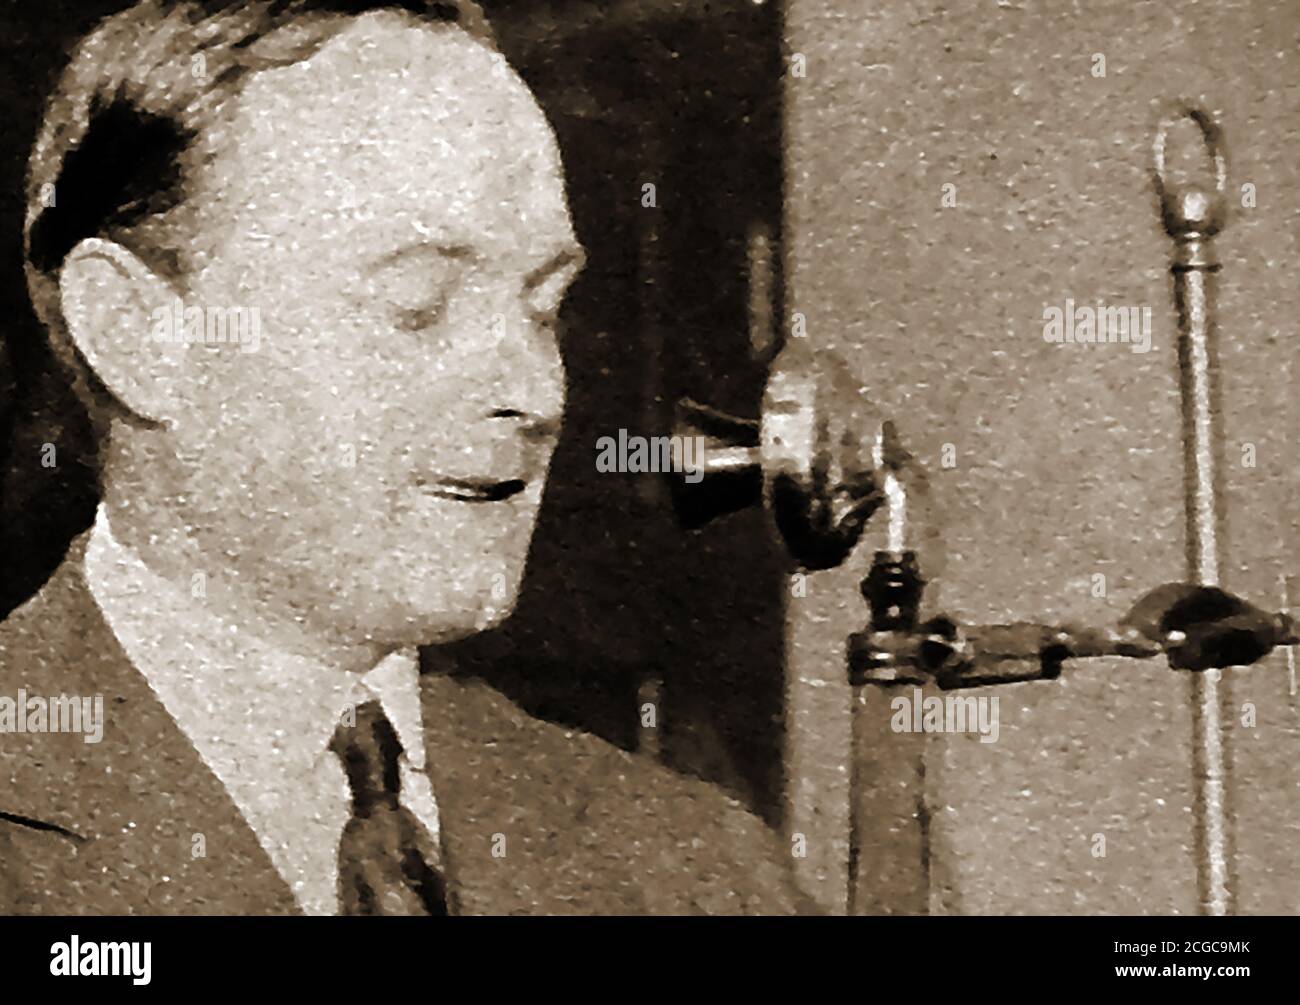 1922 - un retrato impreso de Arthur Richard Burrows - 1882 a 1947. Se le conoció como el tío Arthur actuando en la radio y fue uno de los primeros empleados de la BBC (British Broadcasting Company) convirtiéndose en su primer Director de programas. Anteriormente trabajó como periodista en el periódico Oxford Times. Tanto él como su editor eran amigos y fotógrafos entusiastas. Siempre interesado en la radio y la tecnología inalámbrica, antes de unirse a la BBC estuvo a cargo de las transmisiones experimentales originales de Marconi House. El 14 de noviembre de 1922, leyó el primer boletín de noticias radiofónicas de la BBC Foto de stock